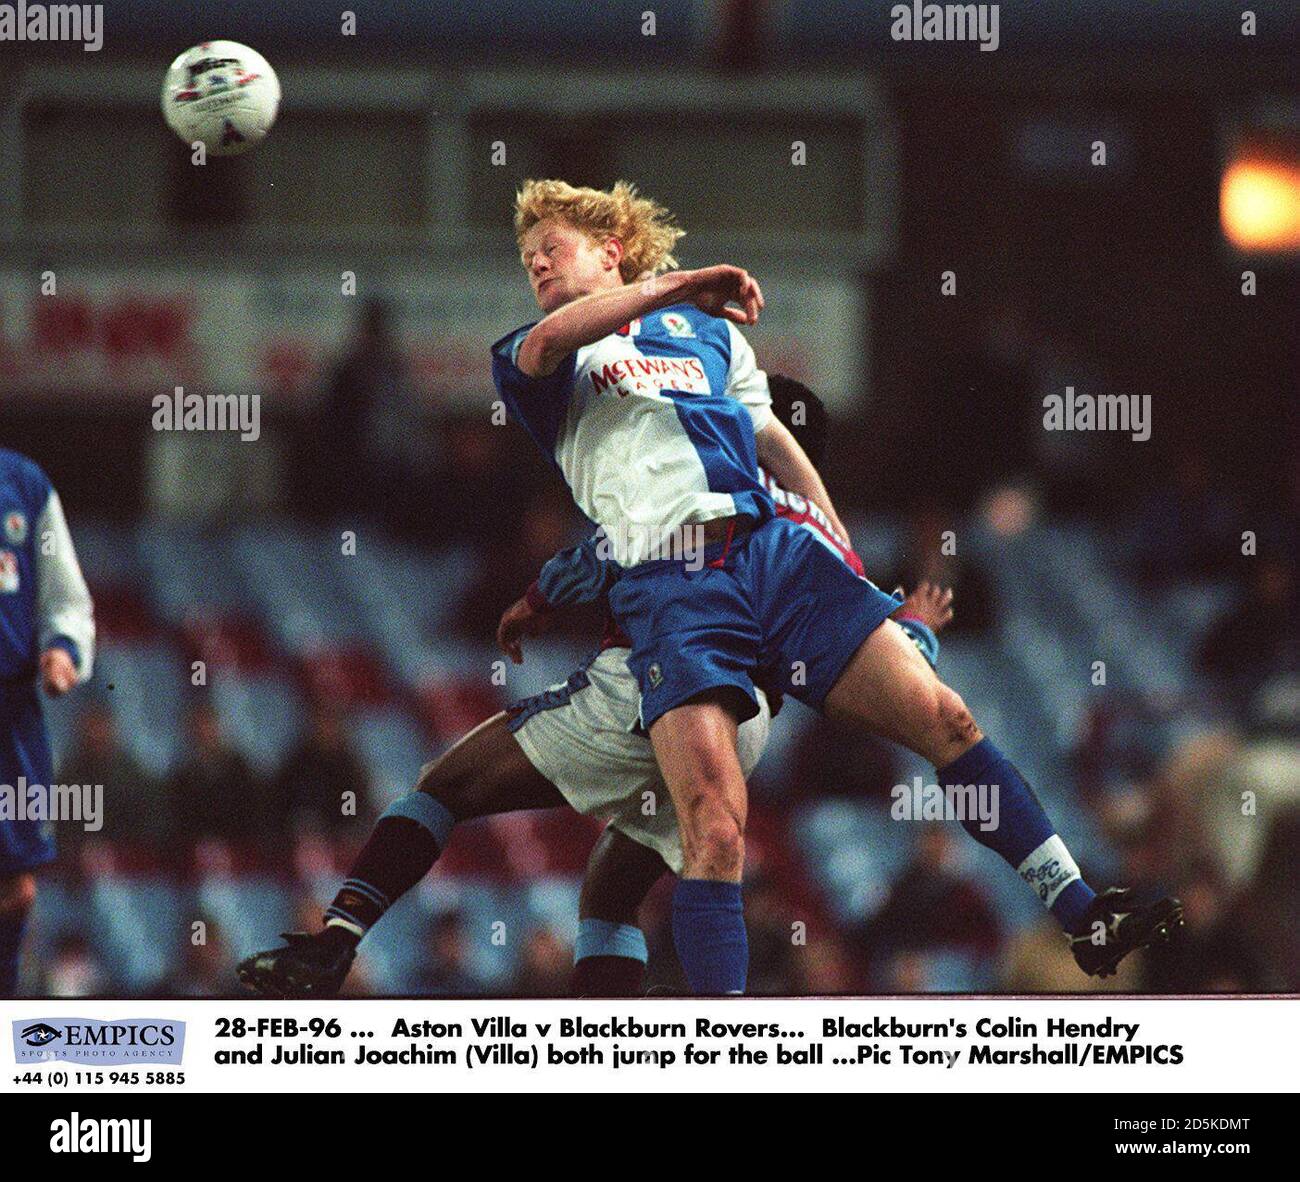 28-FEB-96 ... Aston Villa contro Blackburn Rovers. Colin Hendry di Blackburn e Julian Joachim (Villa) saltano entrambi per la palla Foto Stock